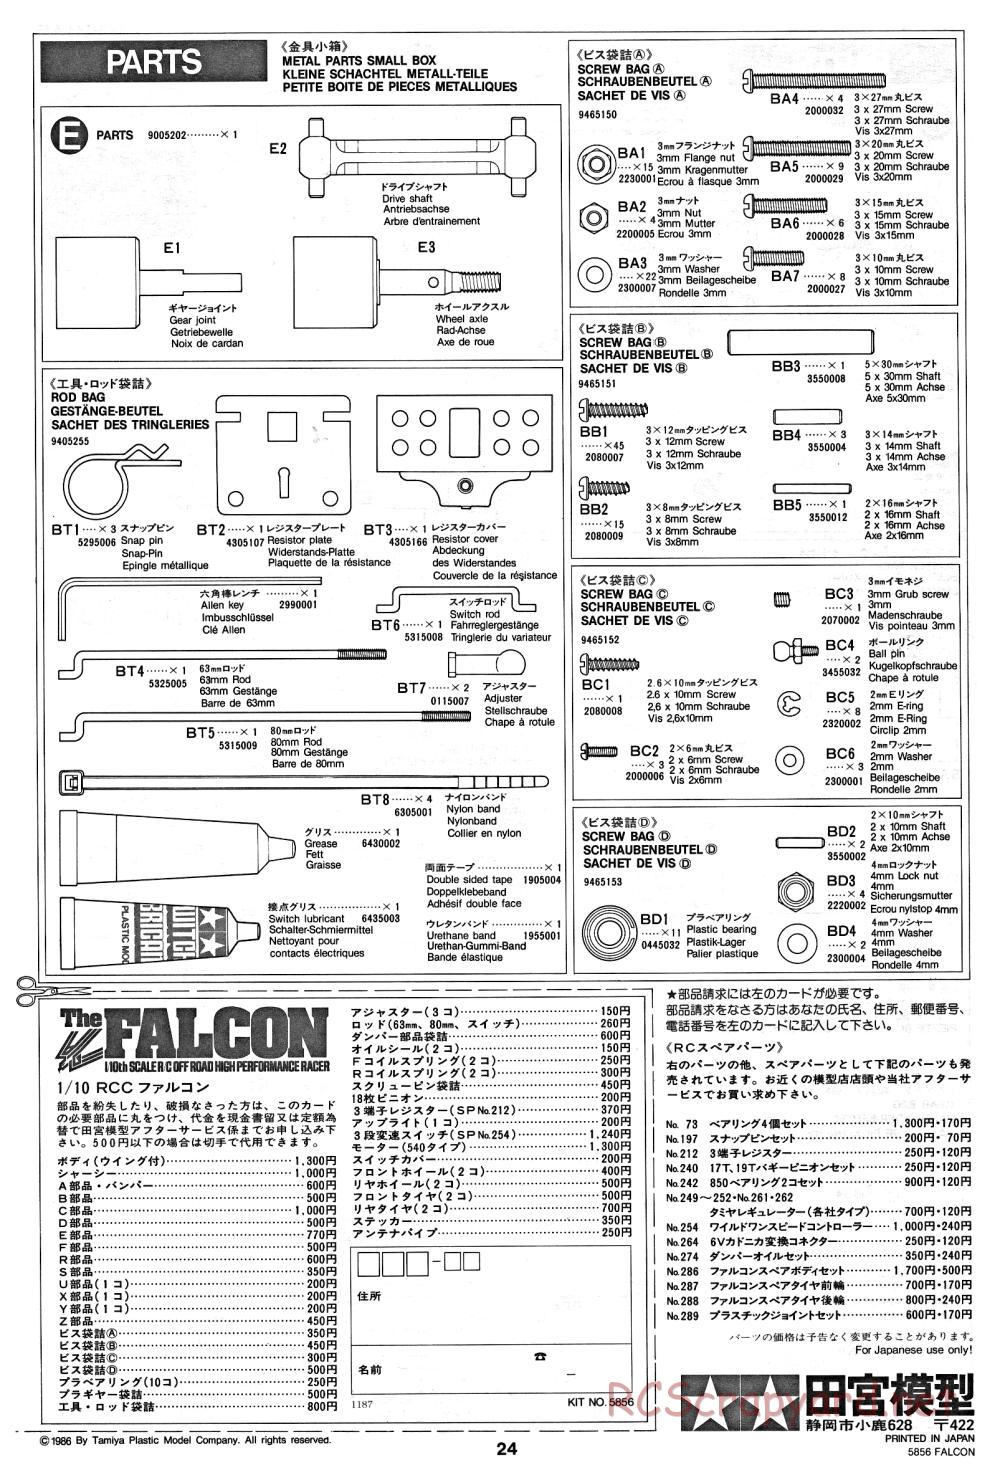 Tamiya - The Falcon - 58056 - Manual - Page 24